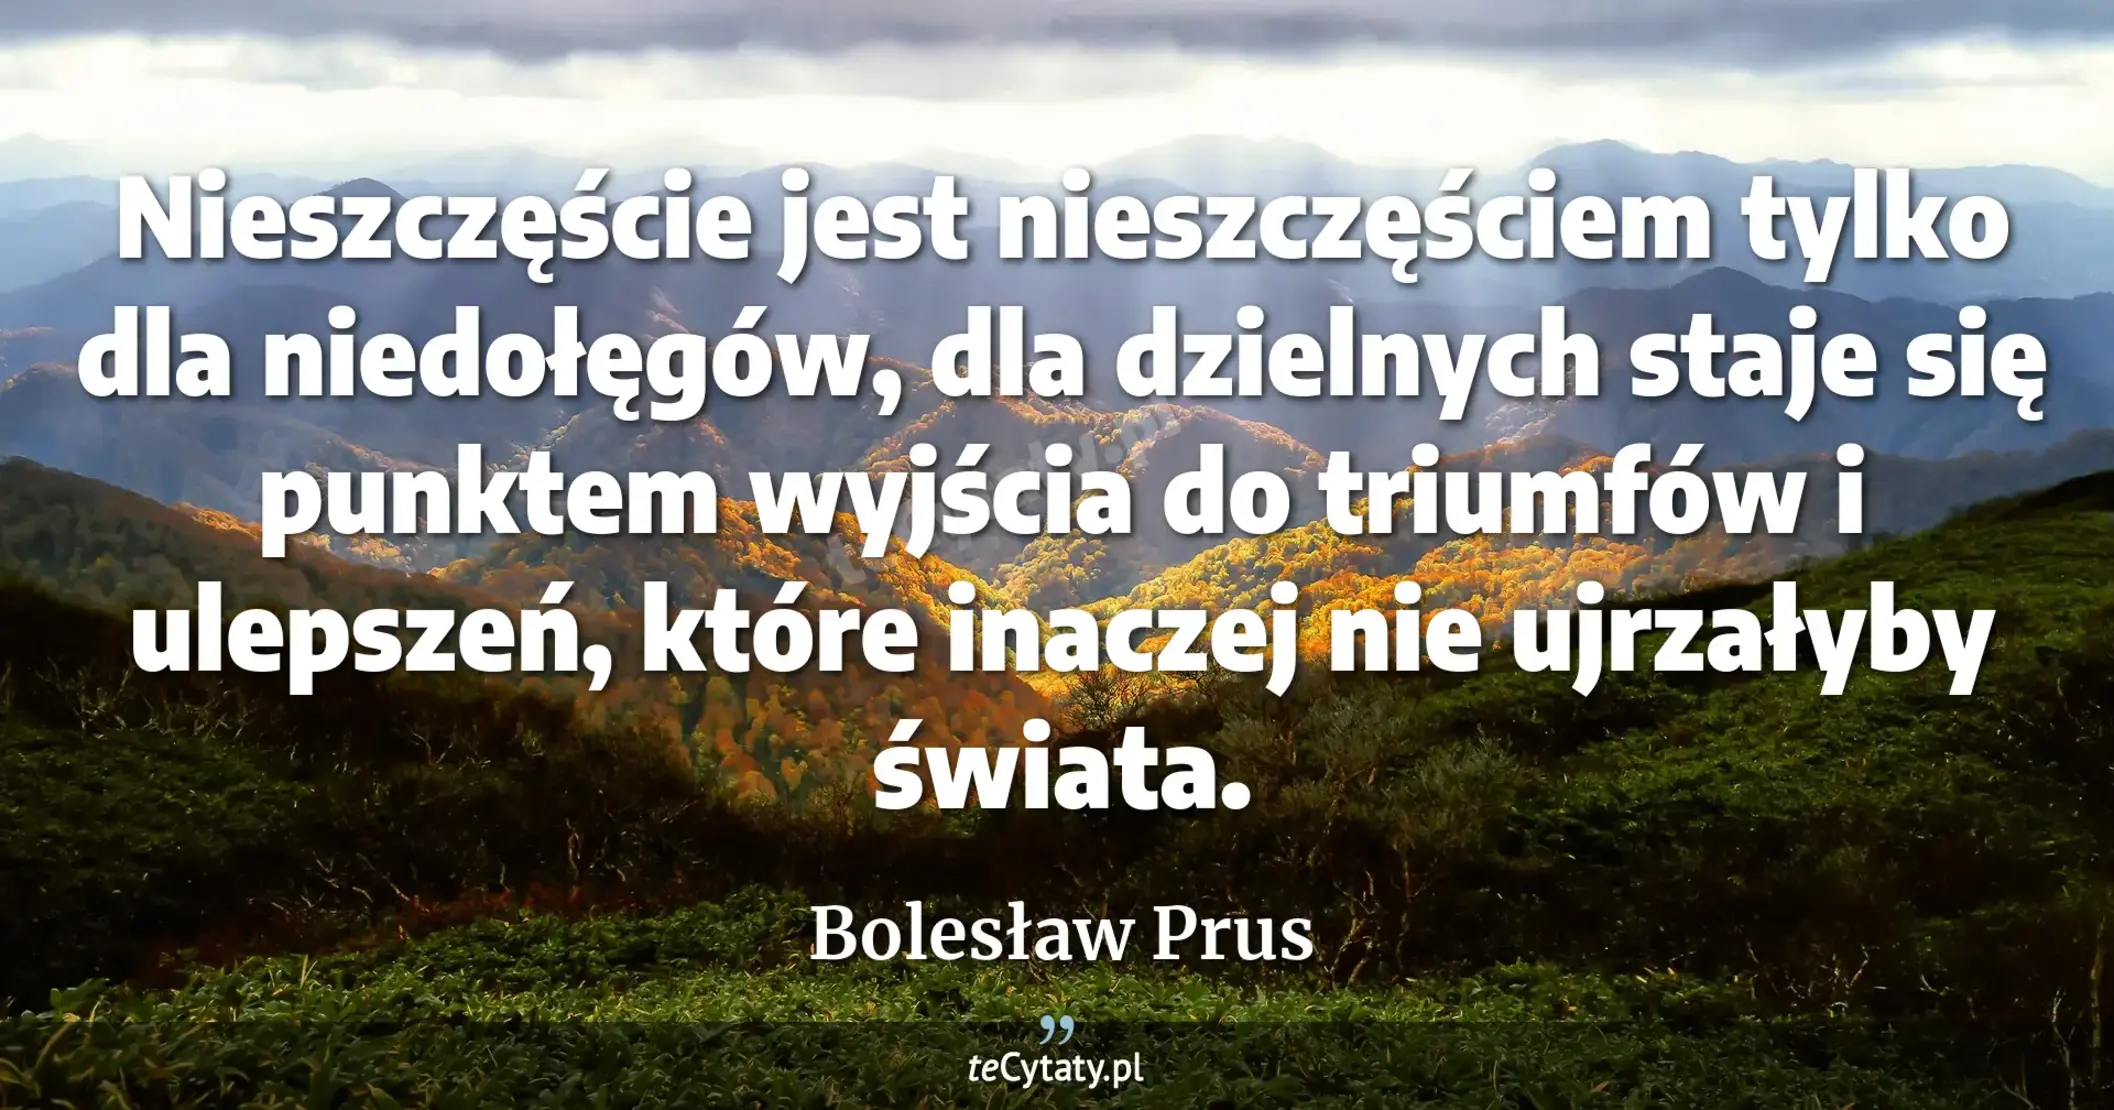 Nieszczęście jest nieszczęściem tylko dla niedołęgów, dla dzielnych staje się punktem wyjścia do triumfów i ulepszeń, które inaczej nie ujrzałyby świata. - Bolesław Prus